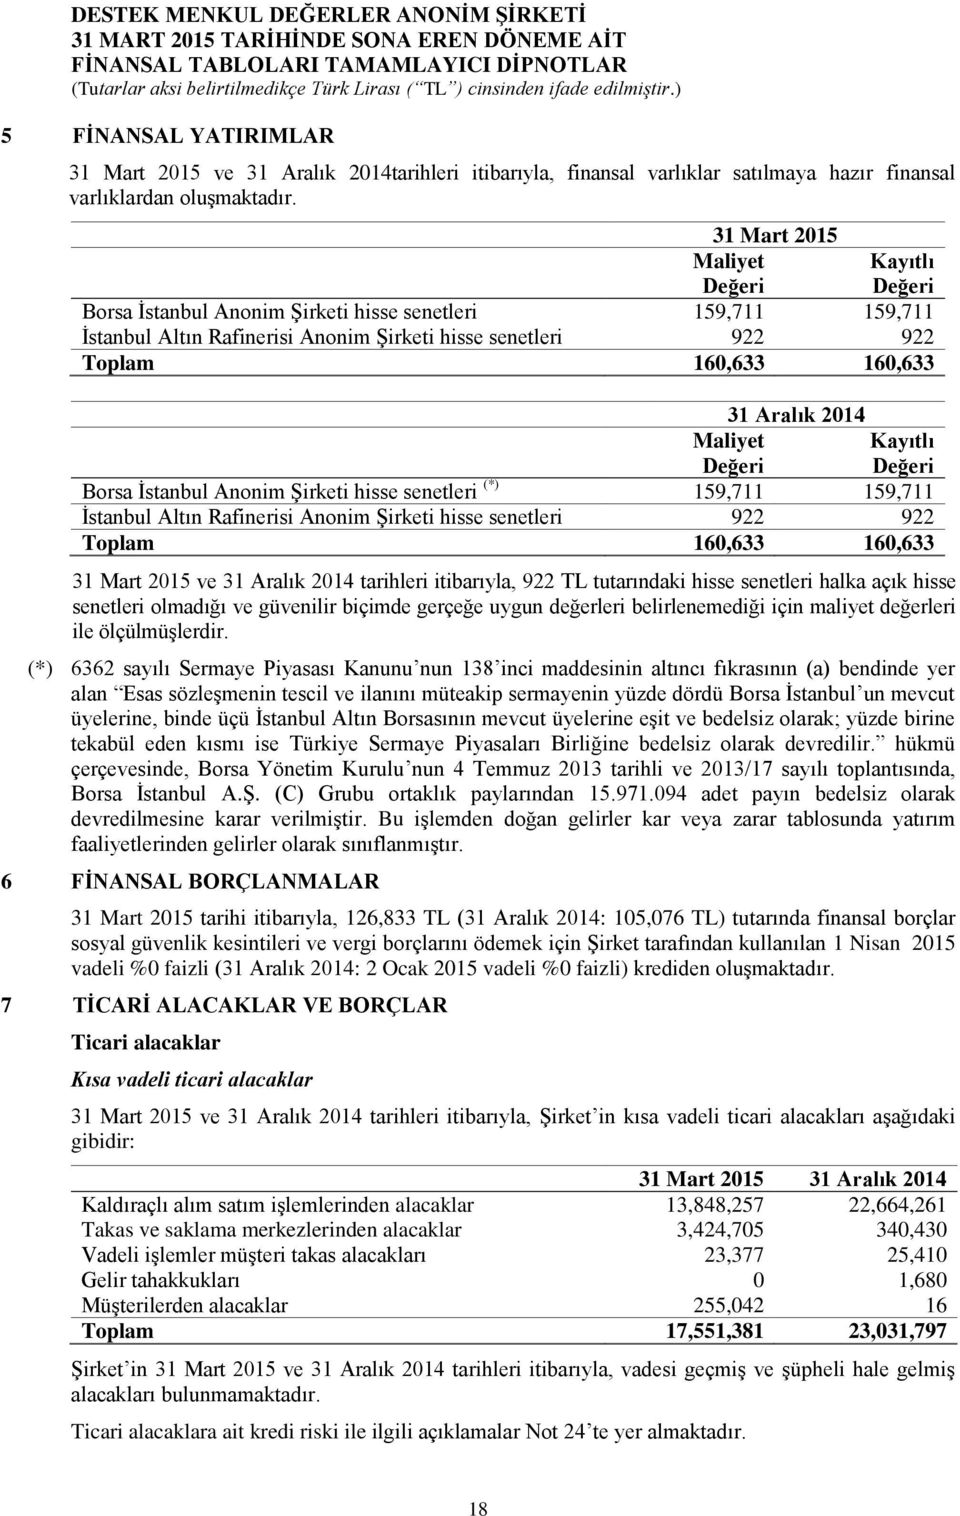 Aralık 2014 Maliyet Değeri Kayıtlı Değeri Borsa İstanbul Anonim Şirketi hisse senetleri (*) 159,711 159,711 İstanbul Altın Rafinerisi Anonim Şirketi hisse senetleri 922 922 Toplam 160,633 160,633 31